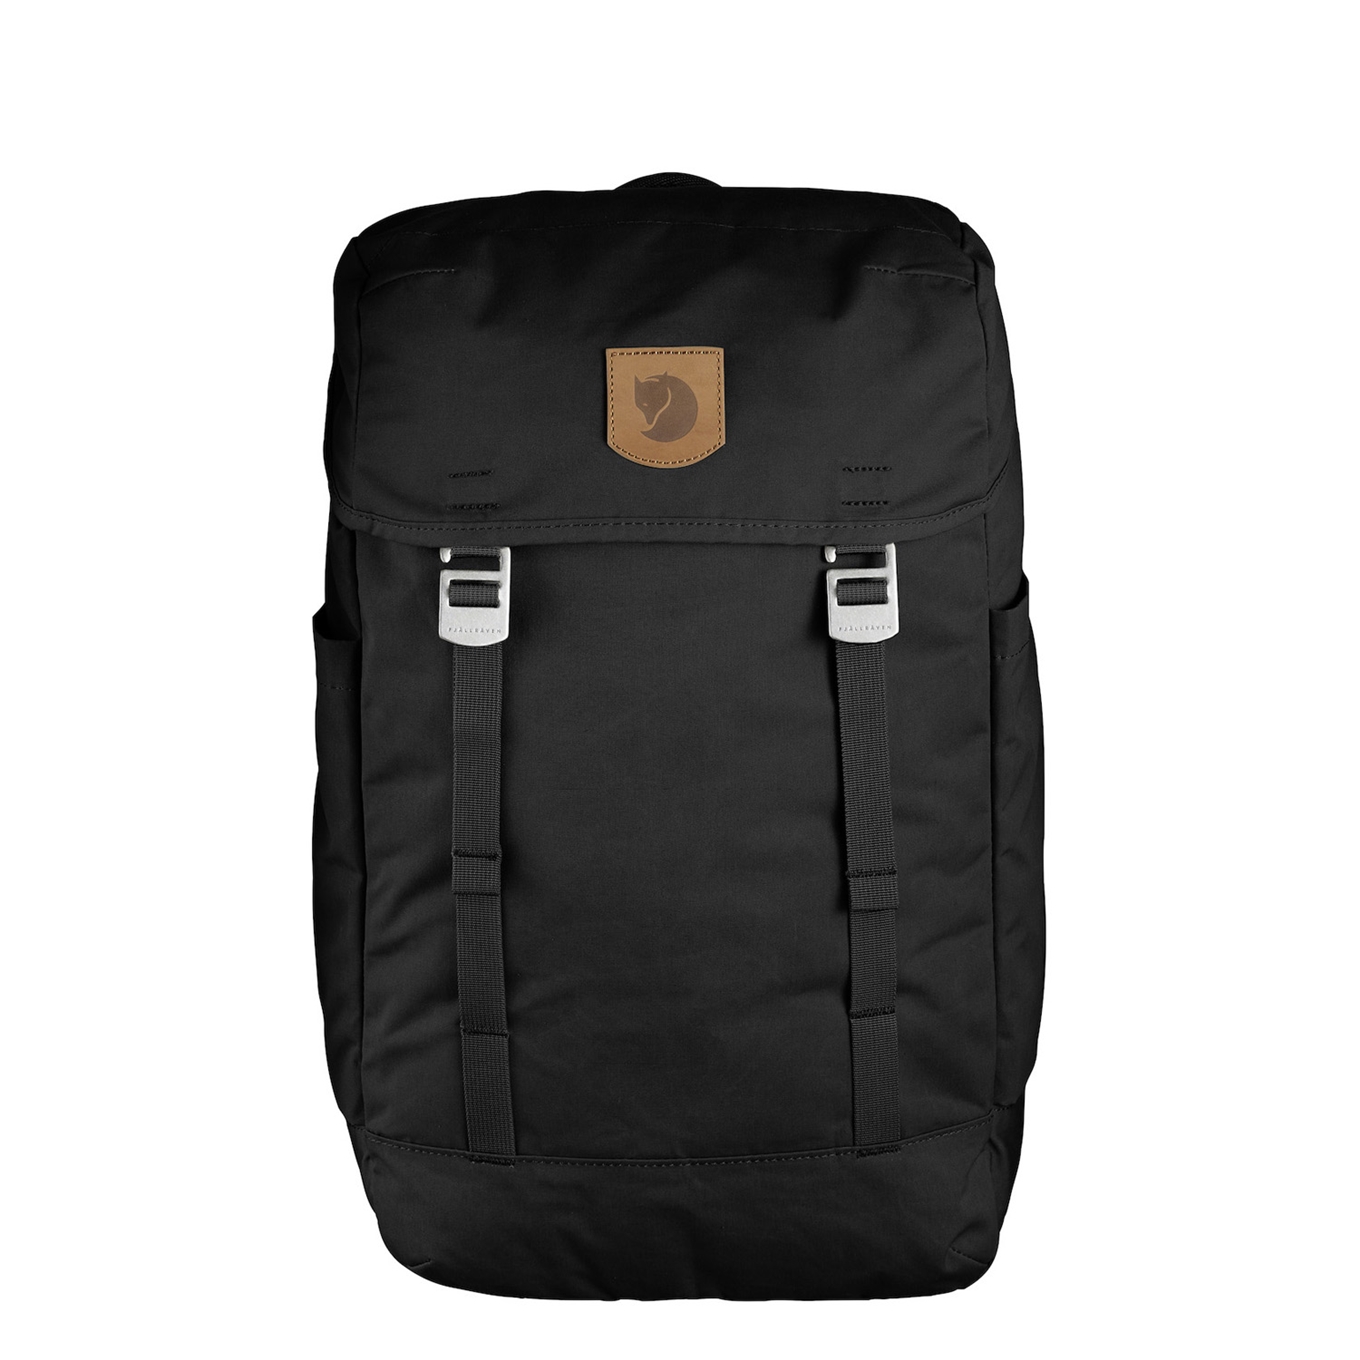 Fjallraven Greenland Top Rugzak black backpack